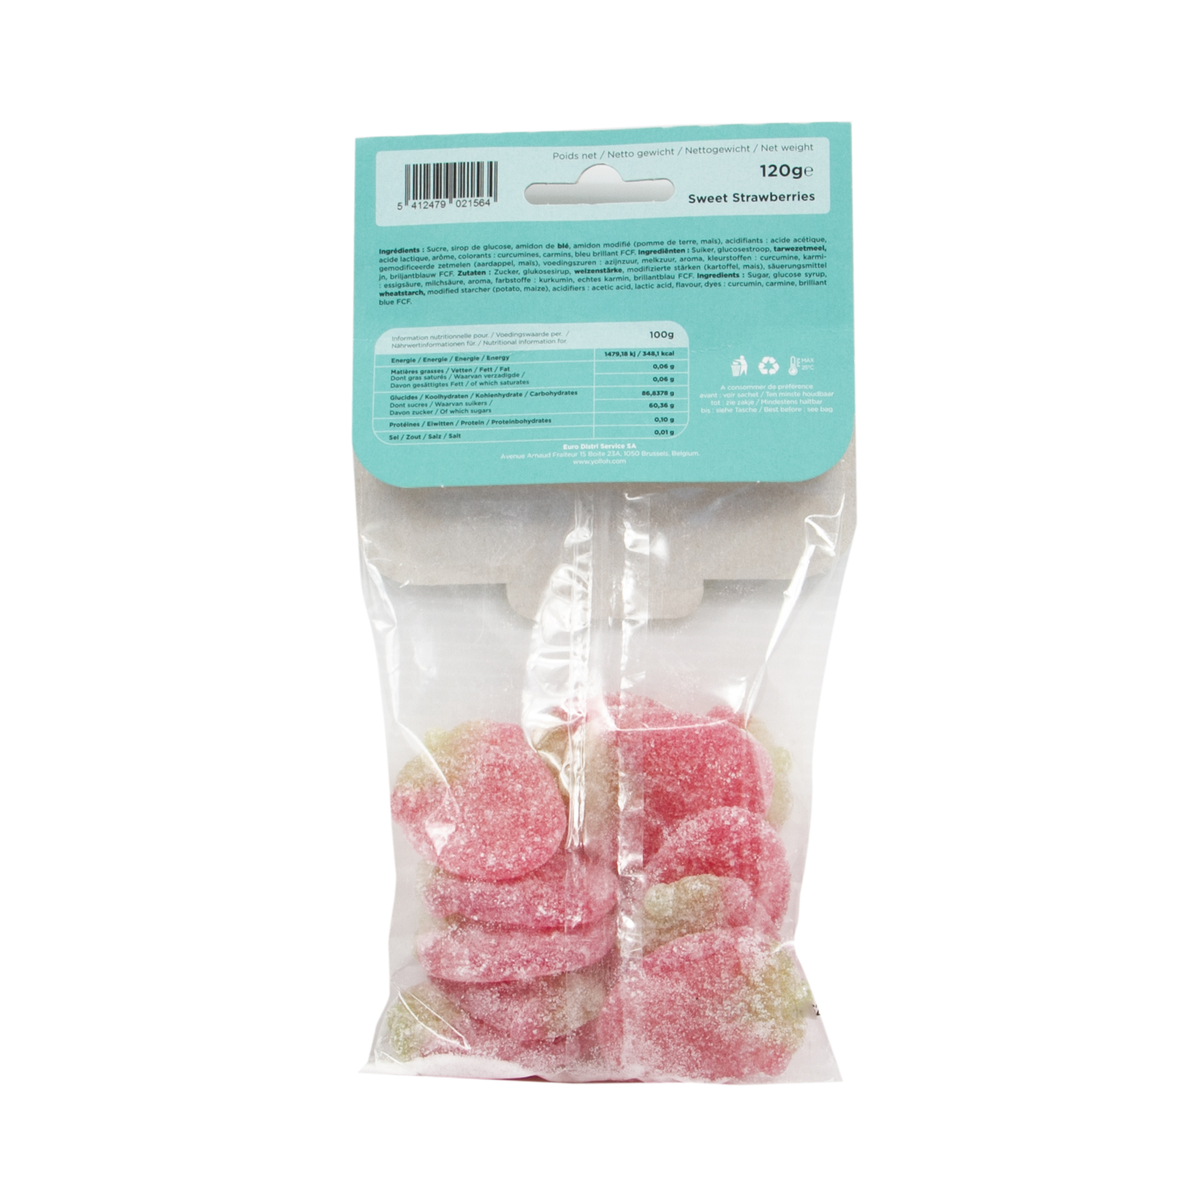 Yolloh Taste Of Pleasure Sweet Strawberries 120g Online At Best Price Candy Bags Lulu Qatar 7931